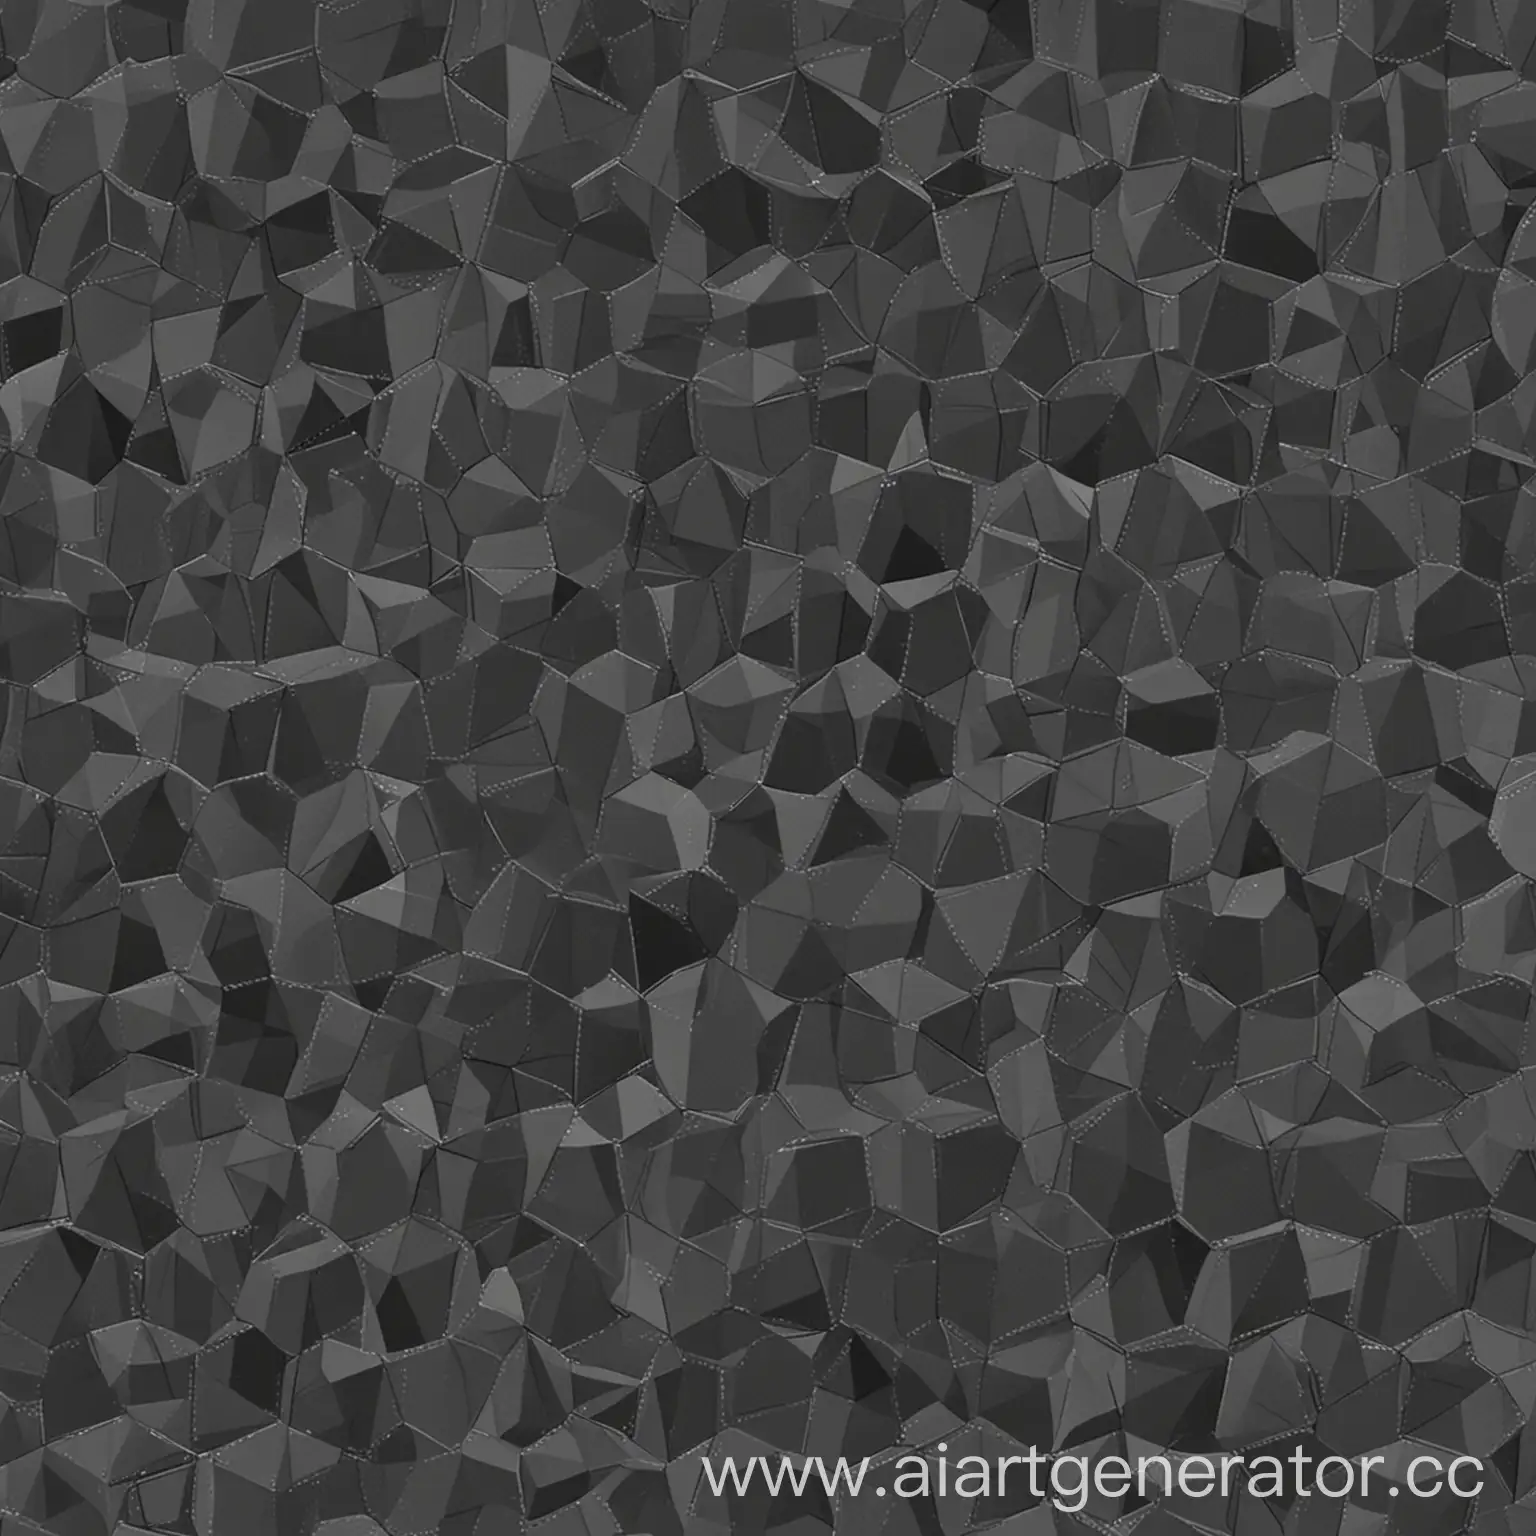 геометрический узор на весь экран из многоугольников, выполненных в разных оттенках тёмно-серого в 2D